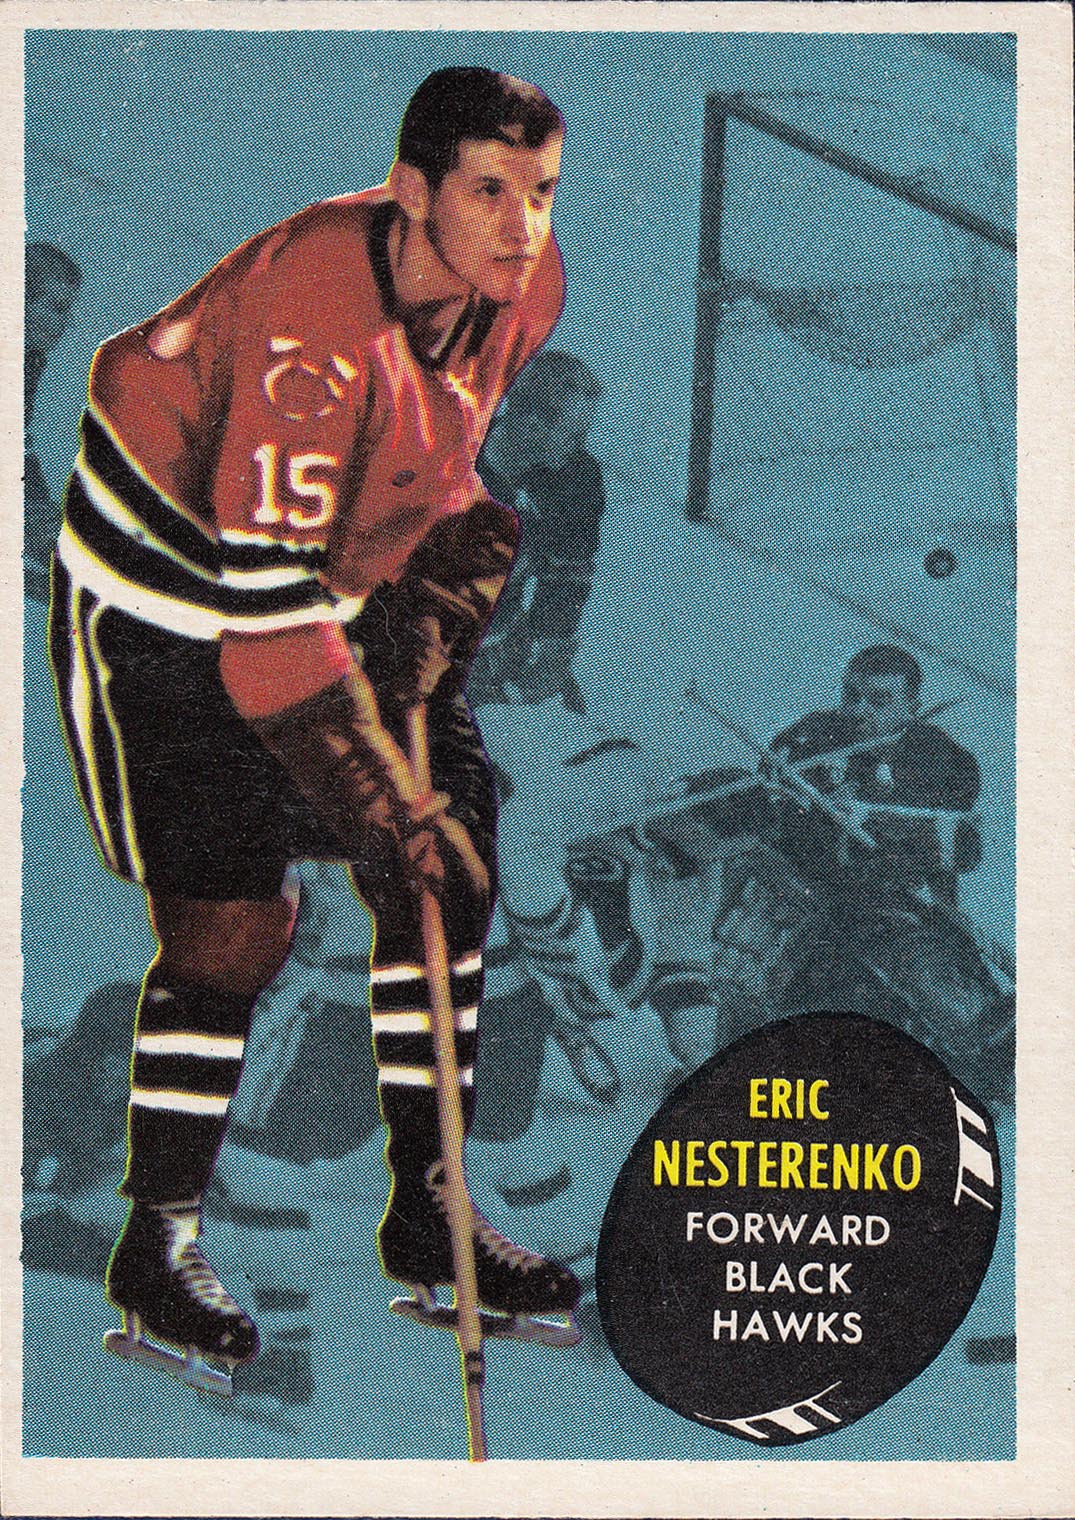 Eric Nesterenko